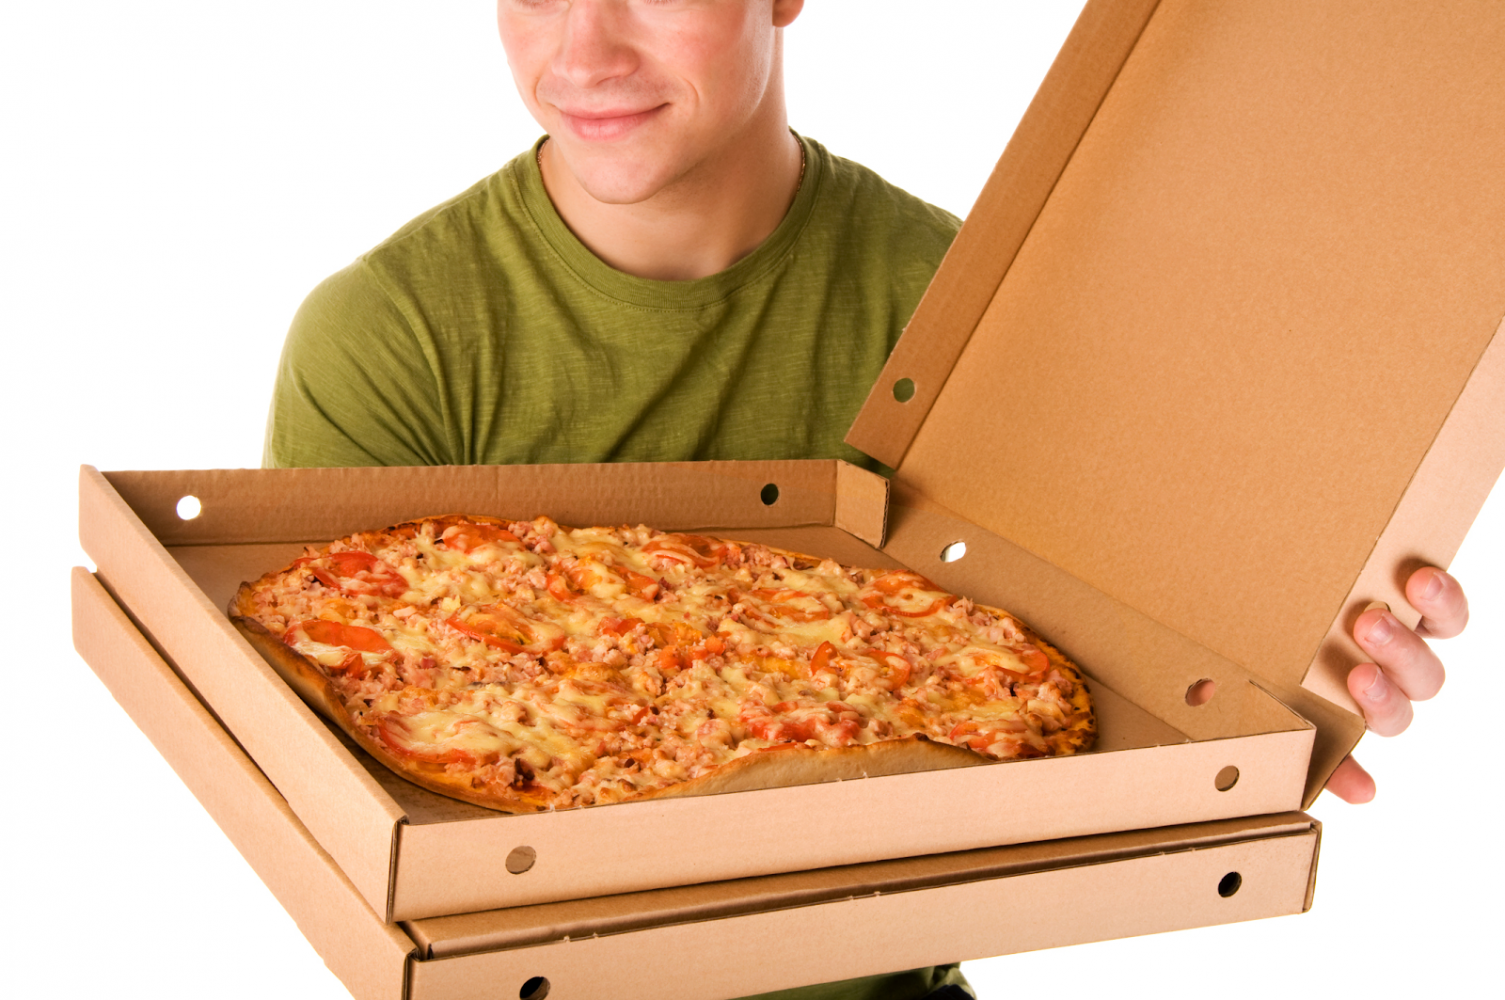 Сайт где макс заказал пиццу завис. Доставщик пиццы. Разносчик пиццы. Человек с коробкой пиццы. Пицца в коробке.